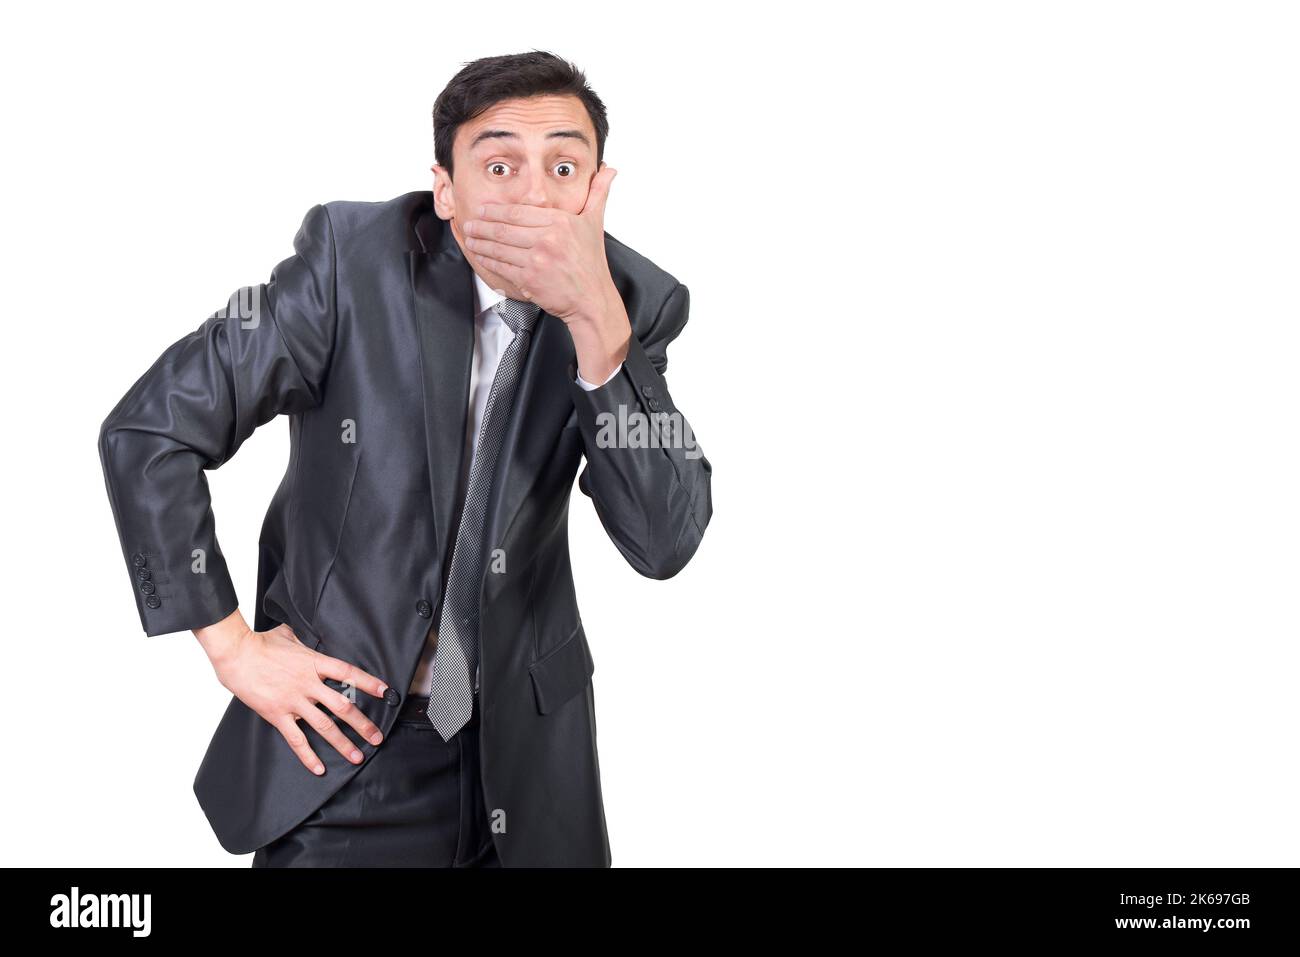 Gesprächiger Mann im Anzug, der den Mund mit der Hand bedeckt Stockfoto